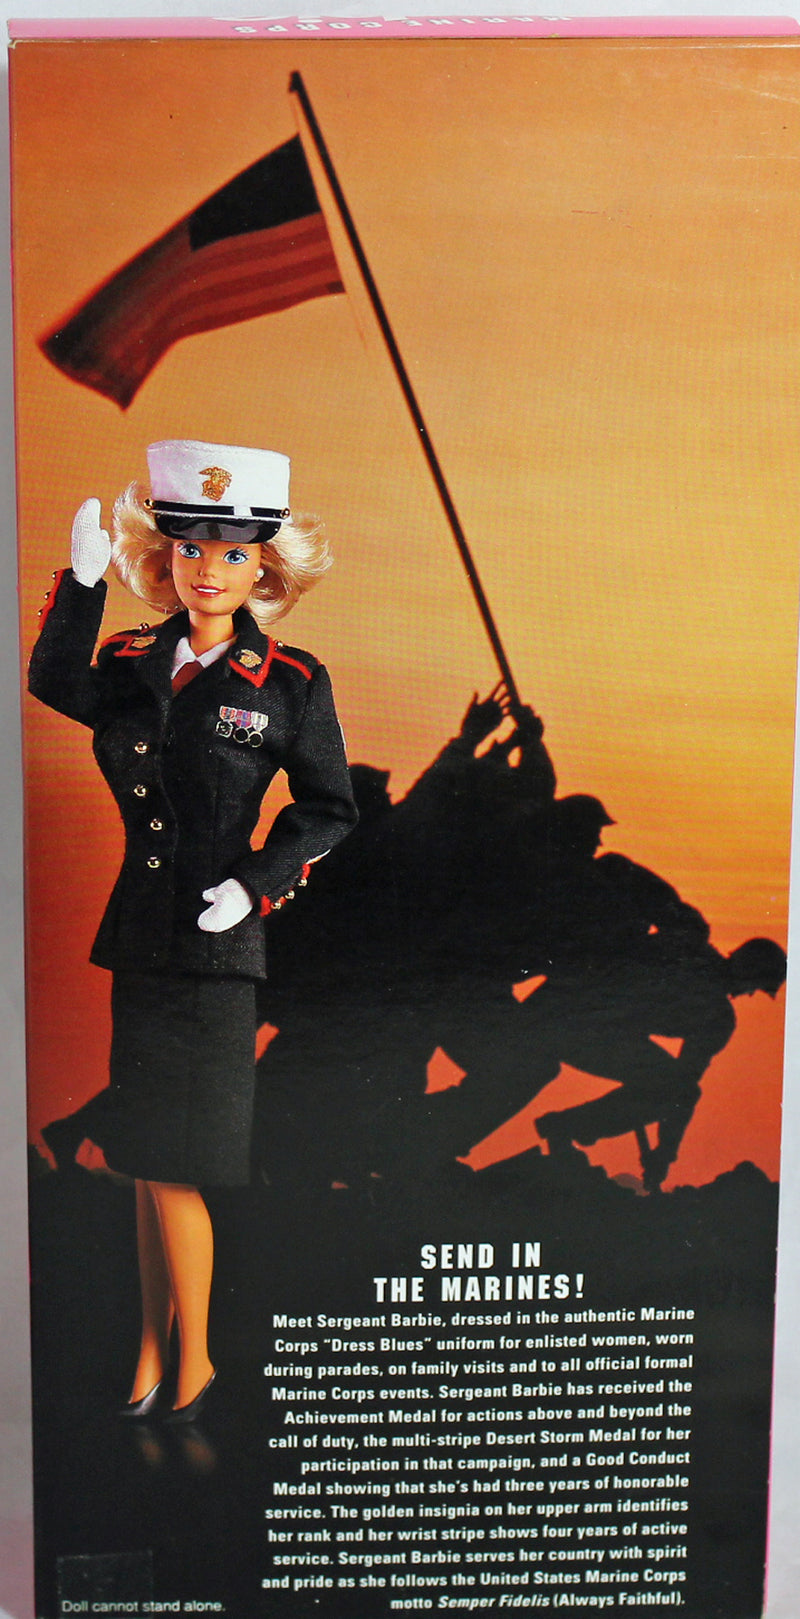 1991 Stars 'n Stripes Marine Corps Barbie (7549)